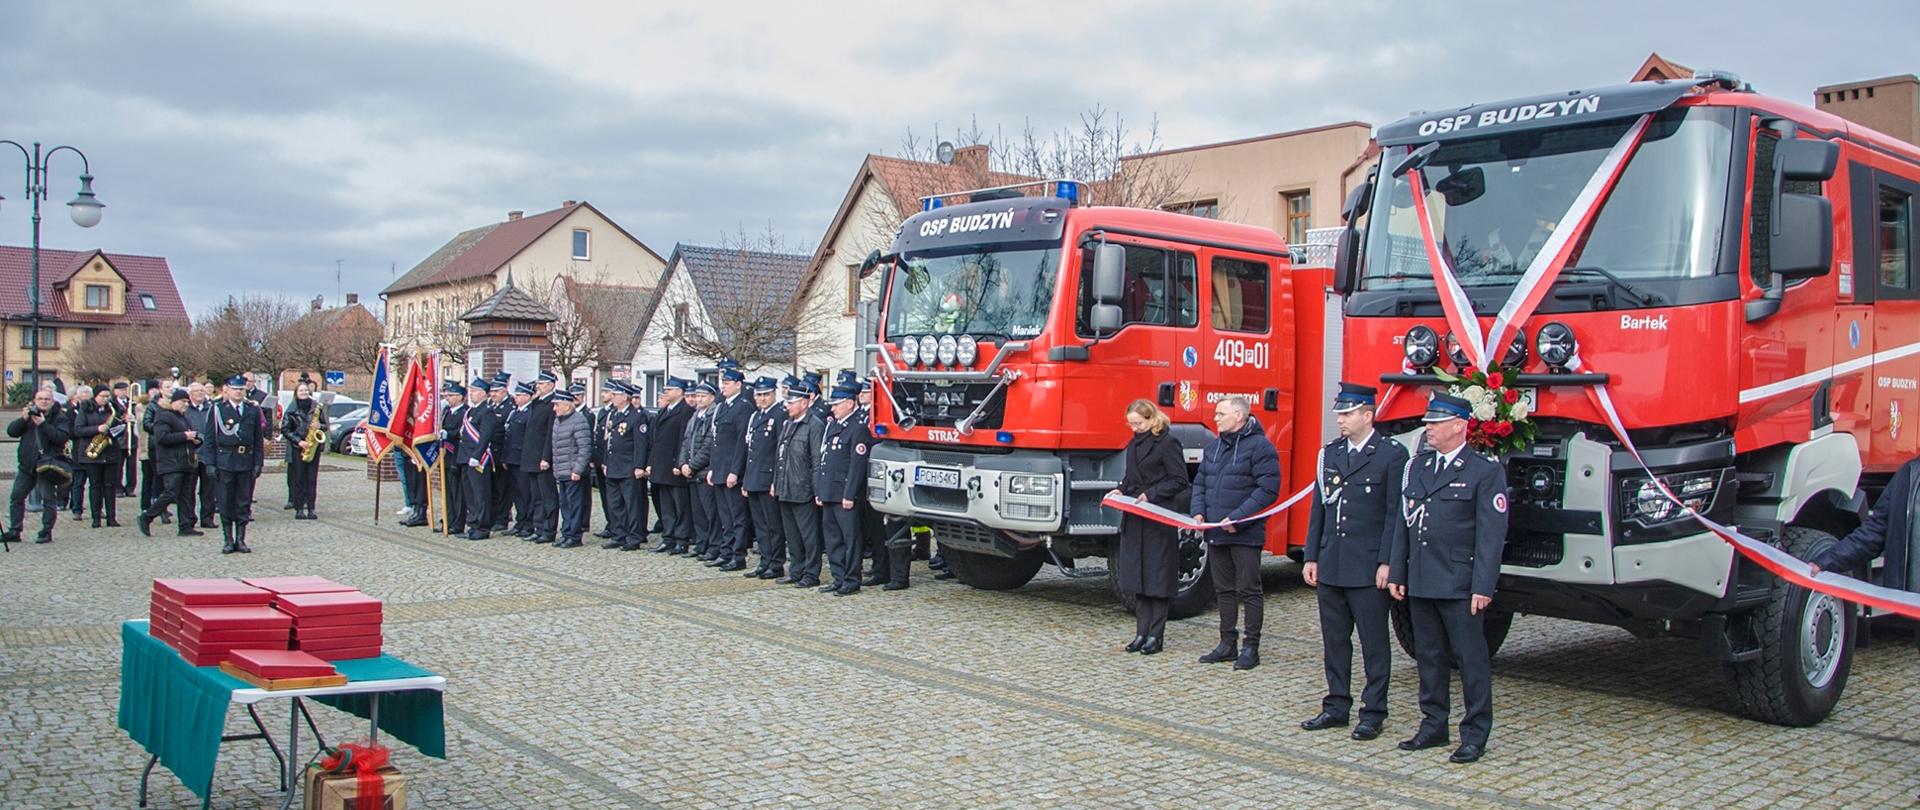 Zdjęcie przedstawia strażaków w trakcie uroczystego przekazania nowego pojazdu gaśniczego dla OSP Budzyń.
W tle rynek budzyński i budynki.
